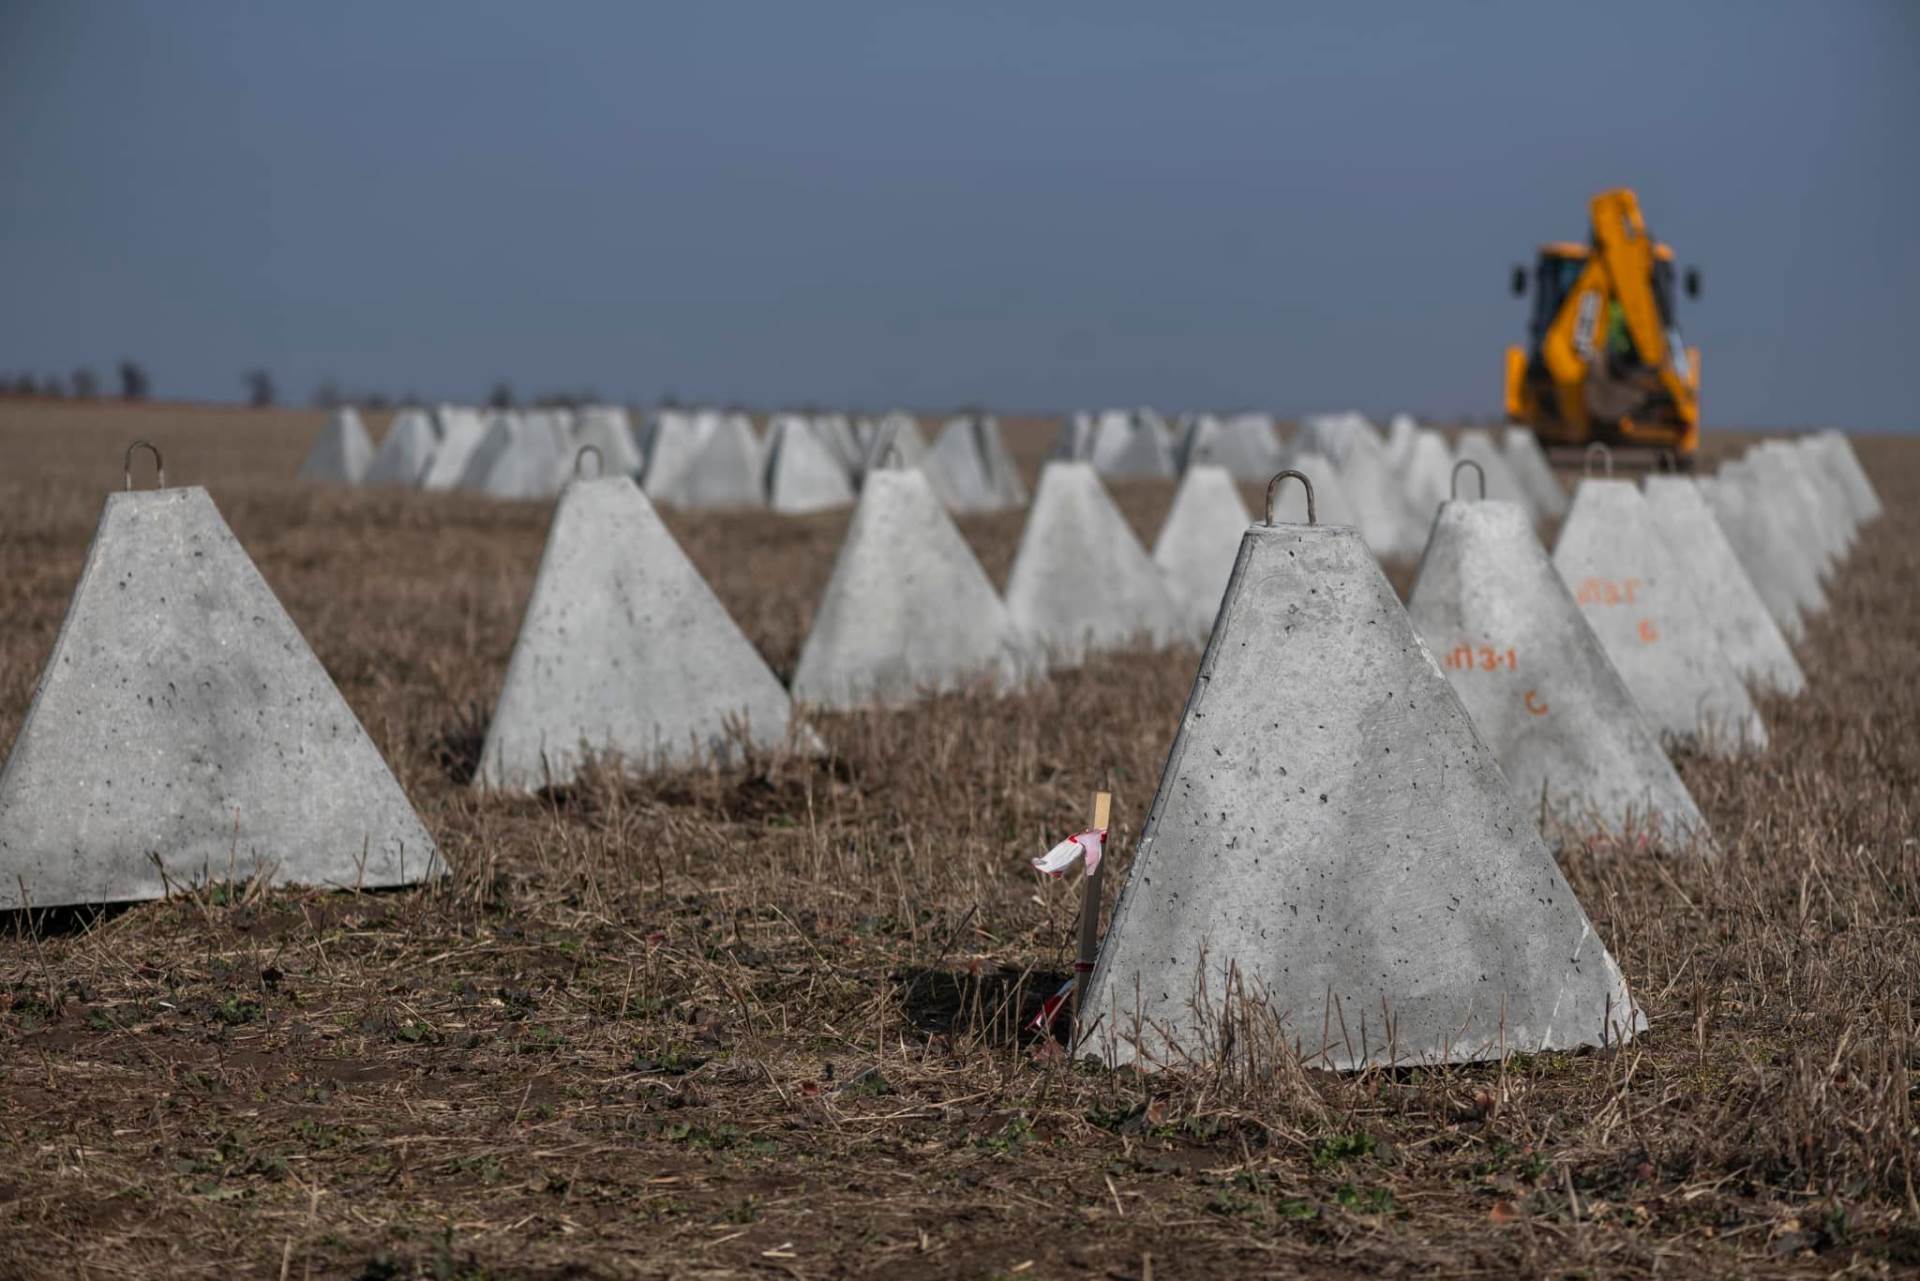  Ukrajina gradi "zid smrti" 